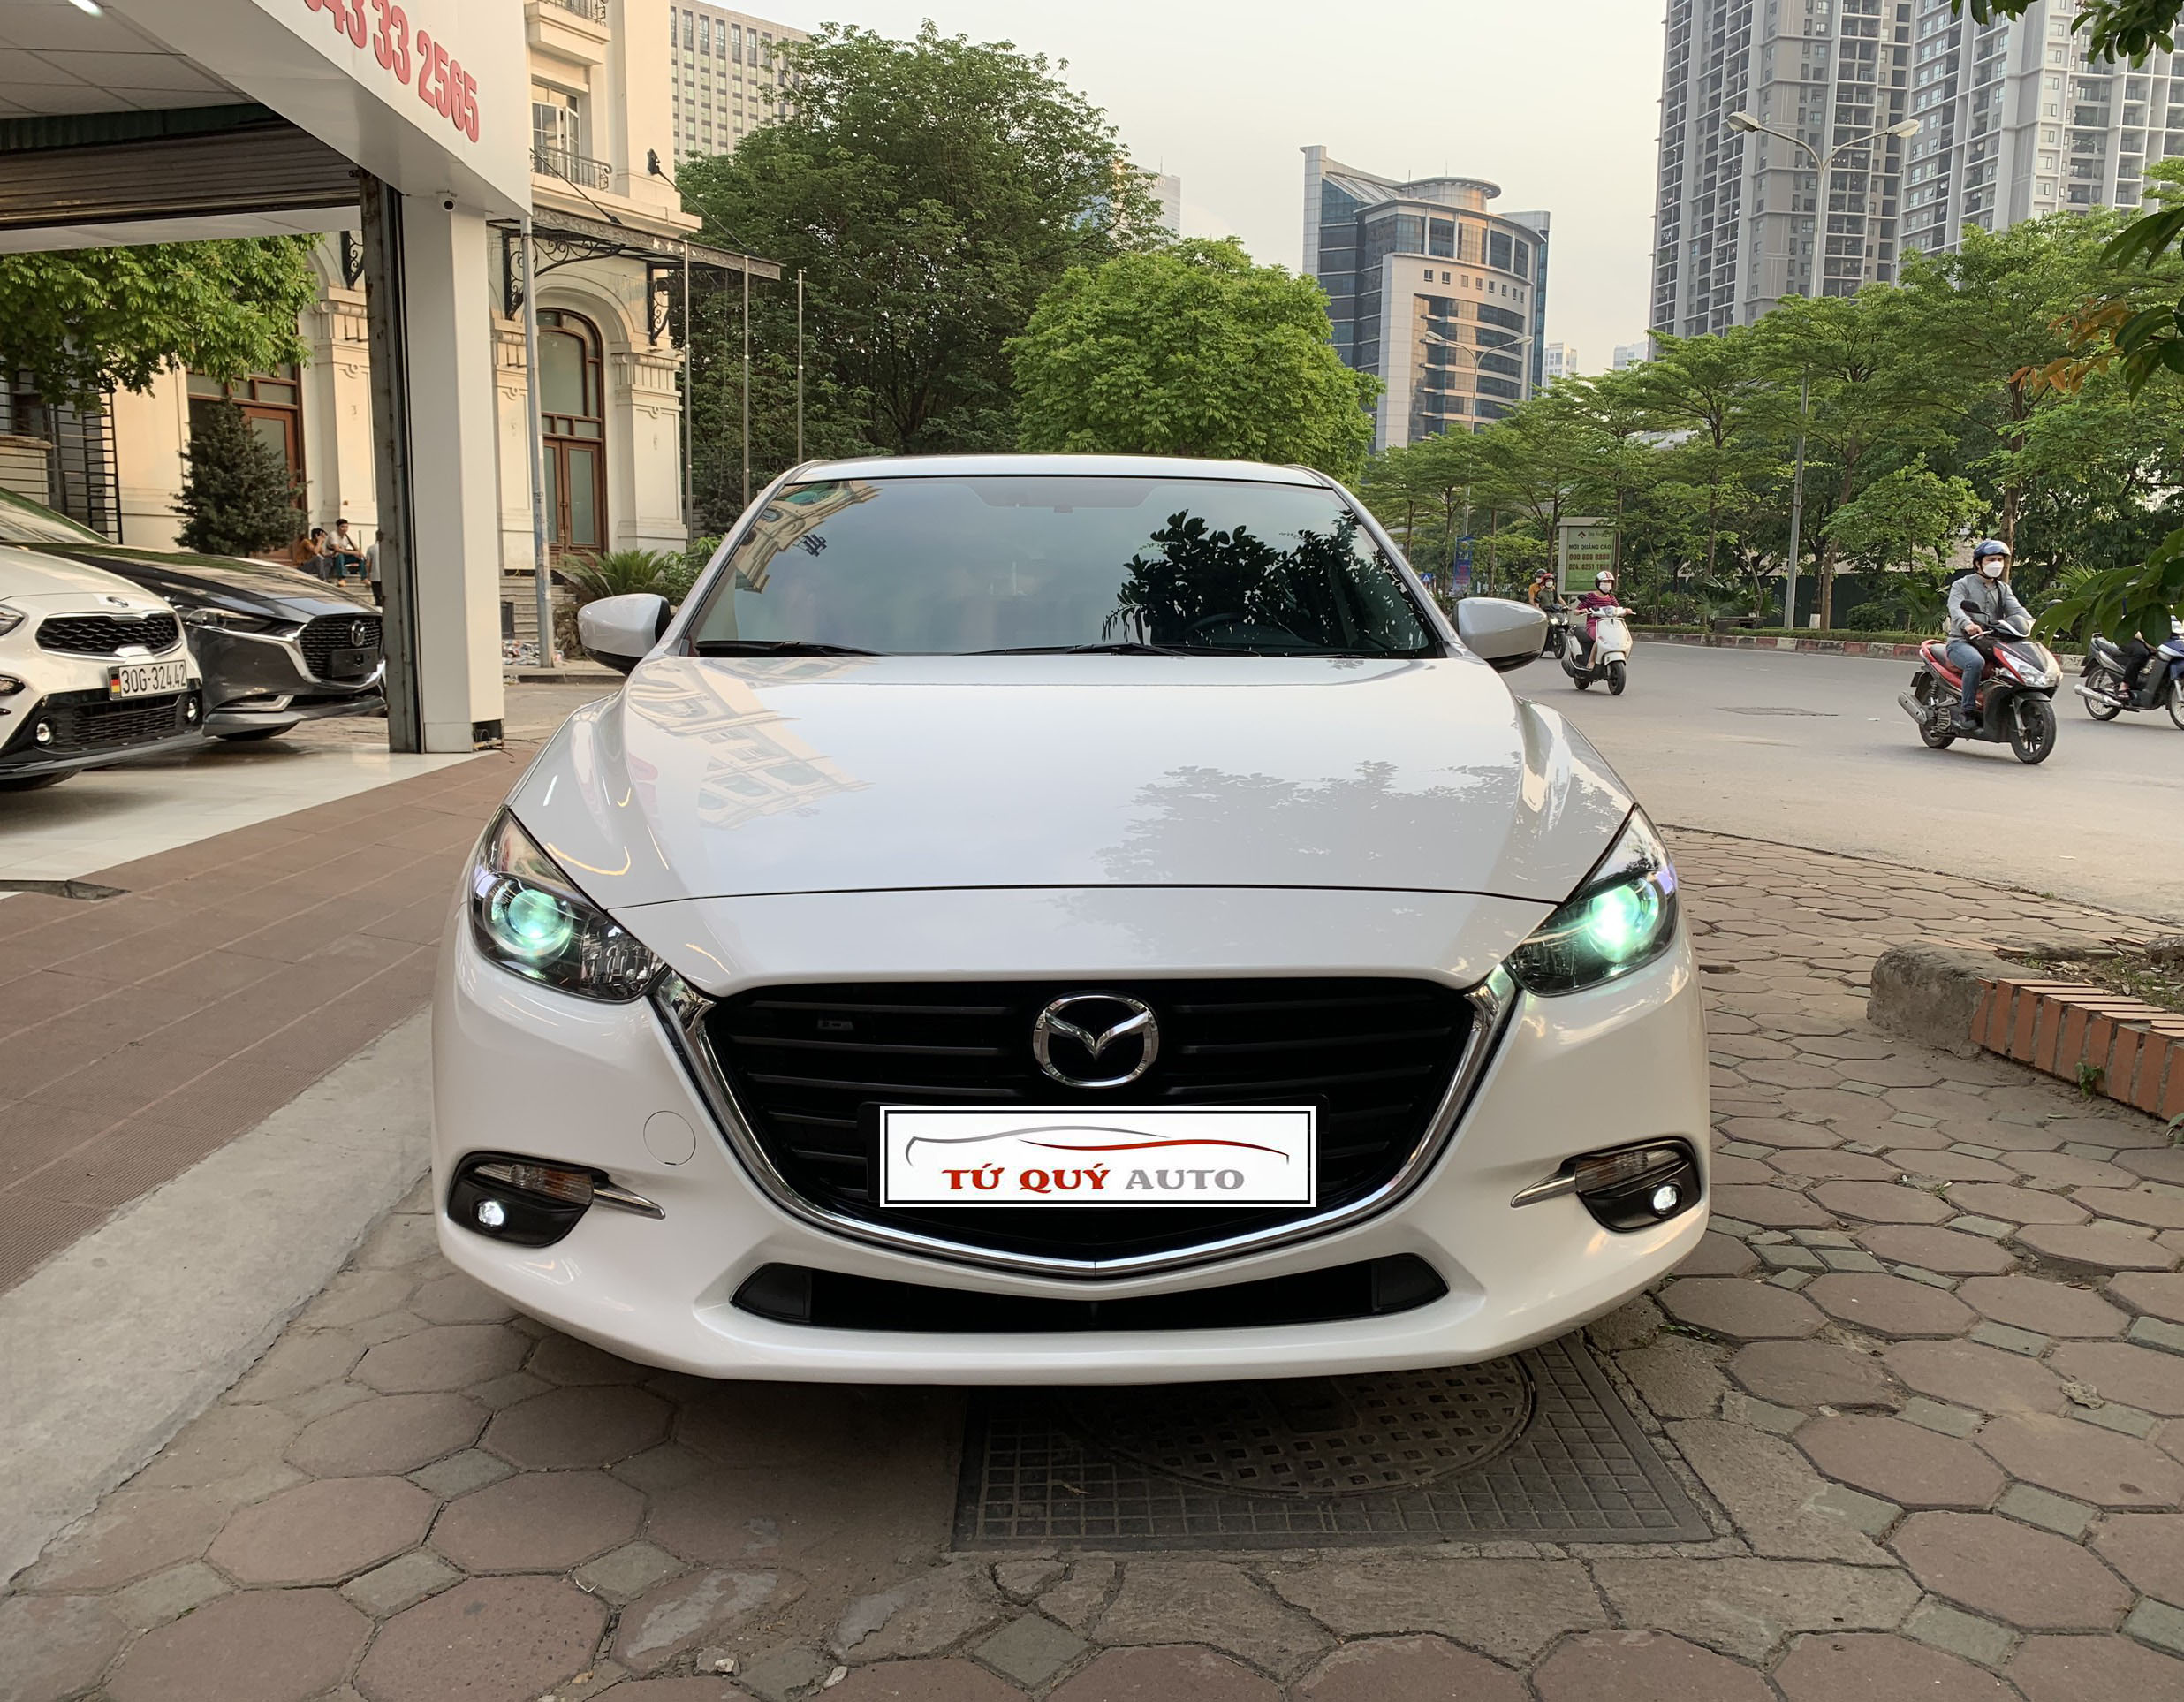 All-new Mazda3 hoàn toàn mới và hấp dẫn với thiết kế đẹp mắt, nhiều tính năng tuyệt vời và hiệu suất lái xe vượt trội. Hãy nhấp vào hình ảnh để khám phá tất cả những điều mới lạ về all-new Mazda3 này.